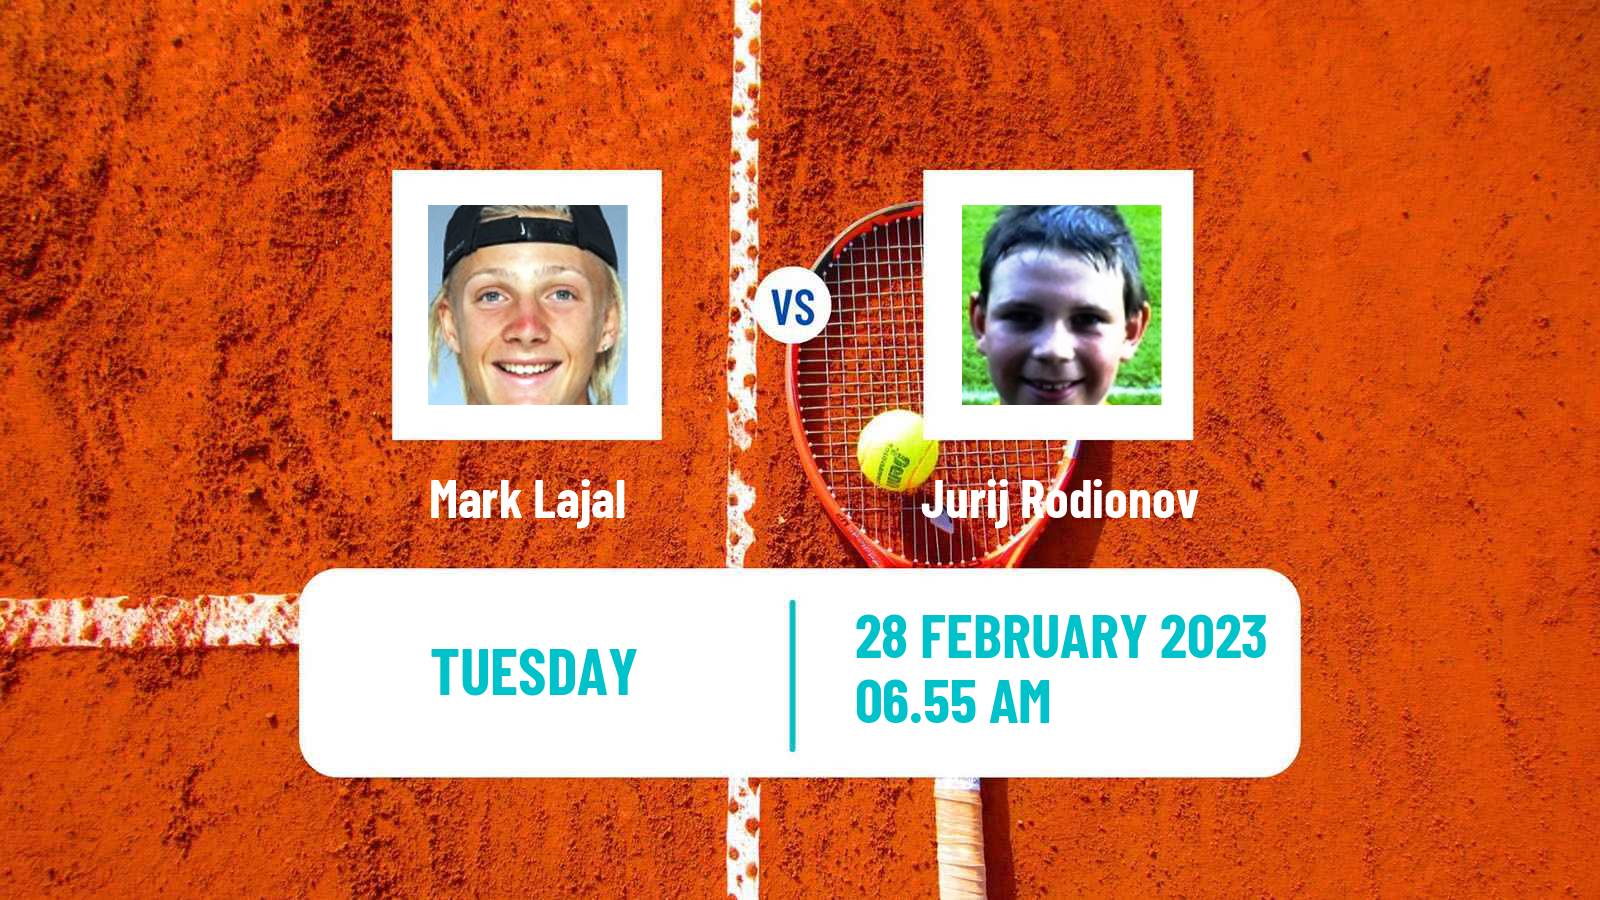 Tennis ATP Challenger Mark Lajal - Jurij Rodionov